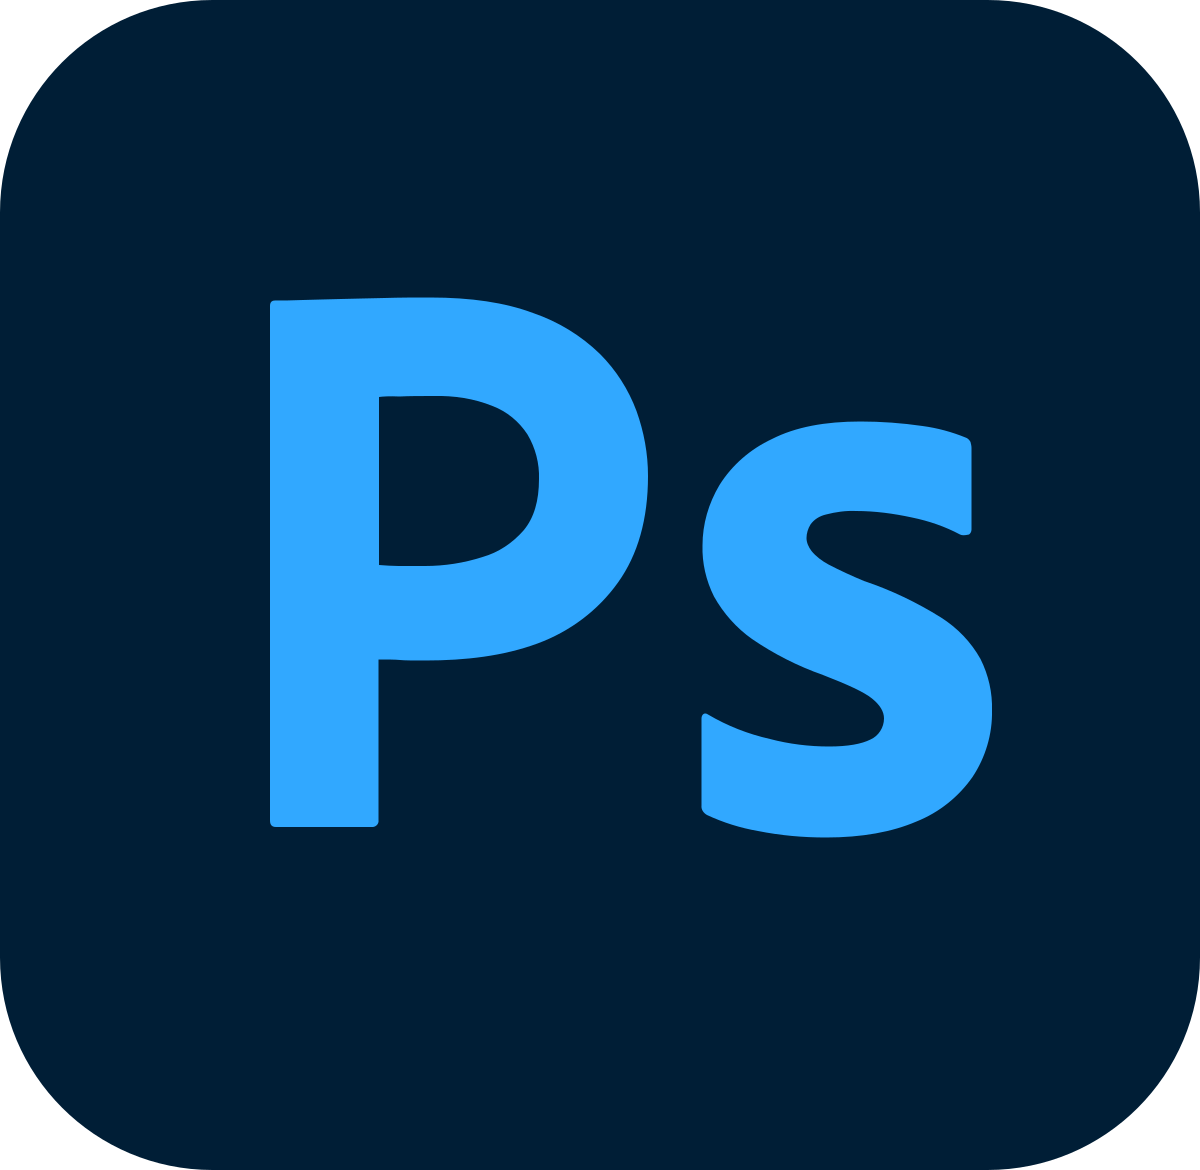 Photoshop cs5 extrahieren filter download mac pro